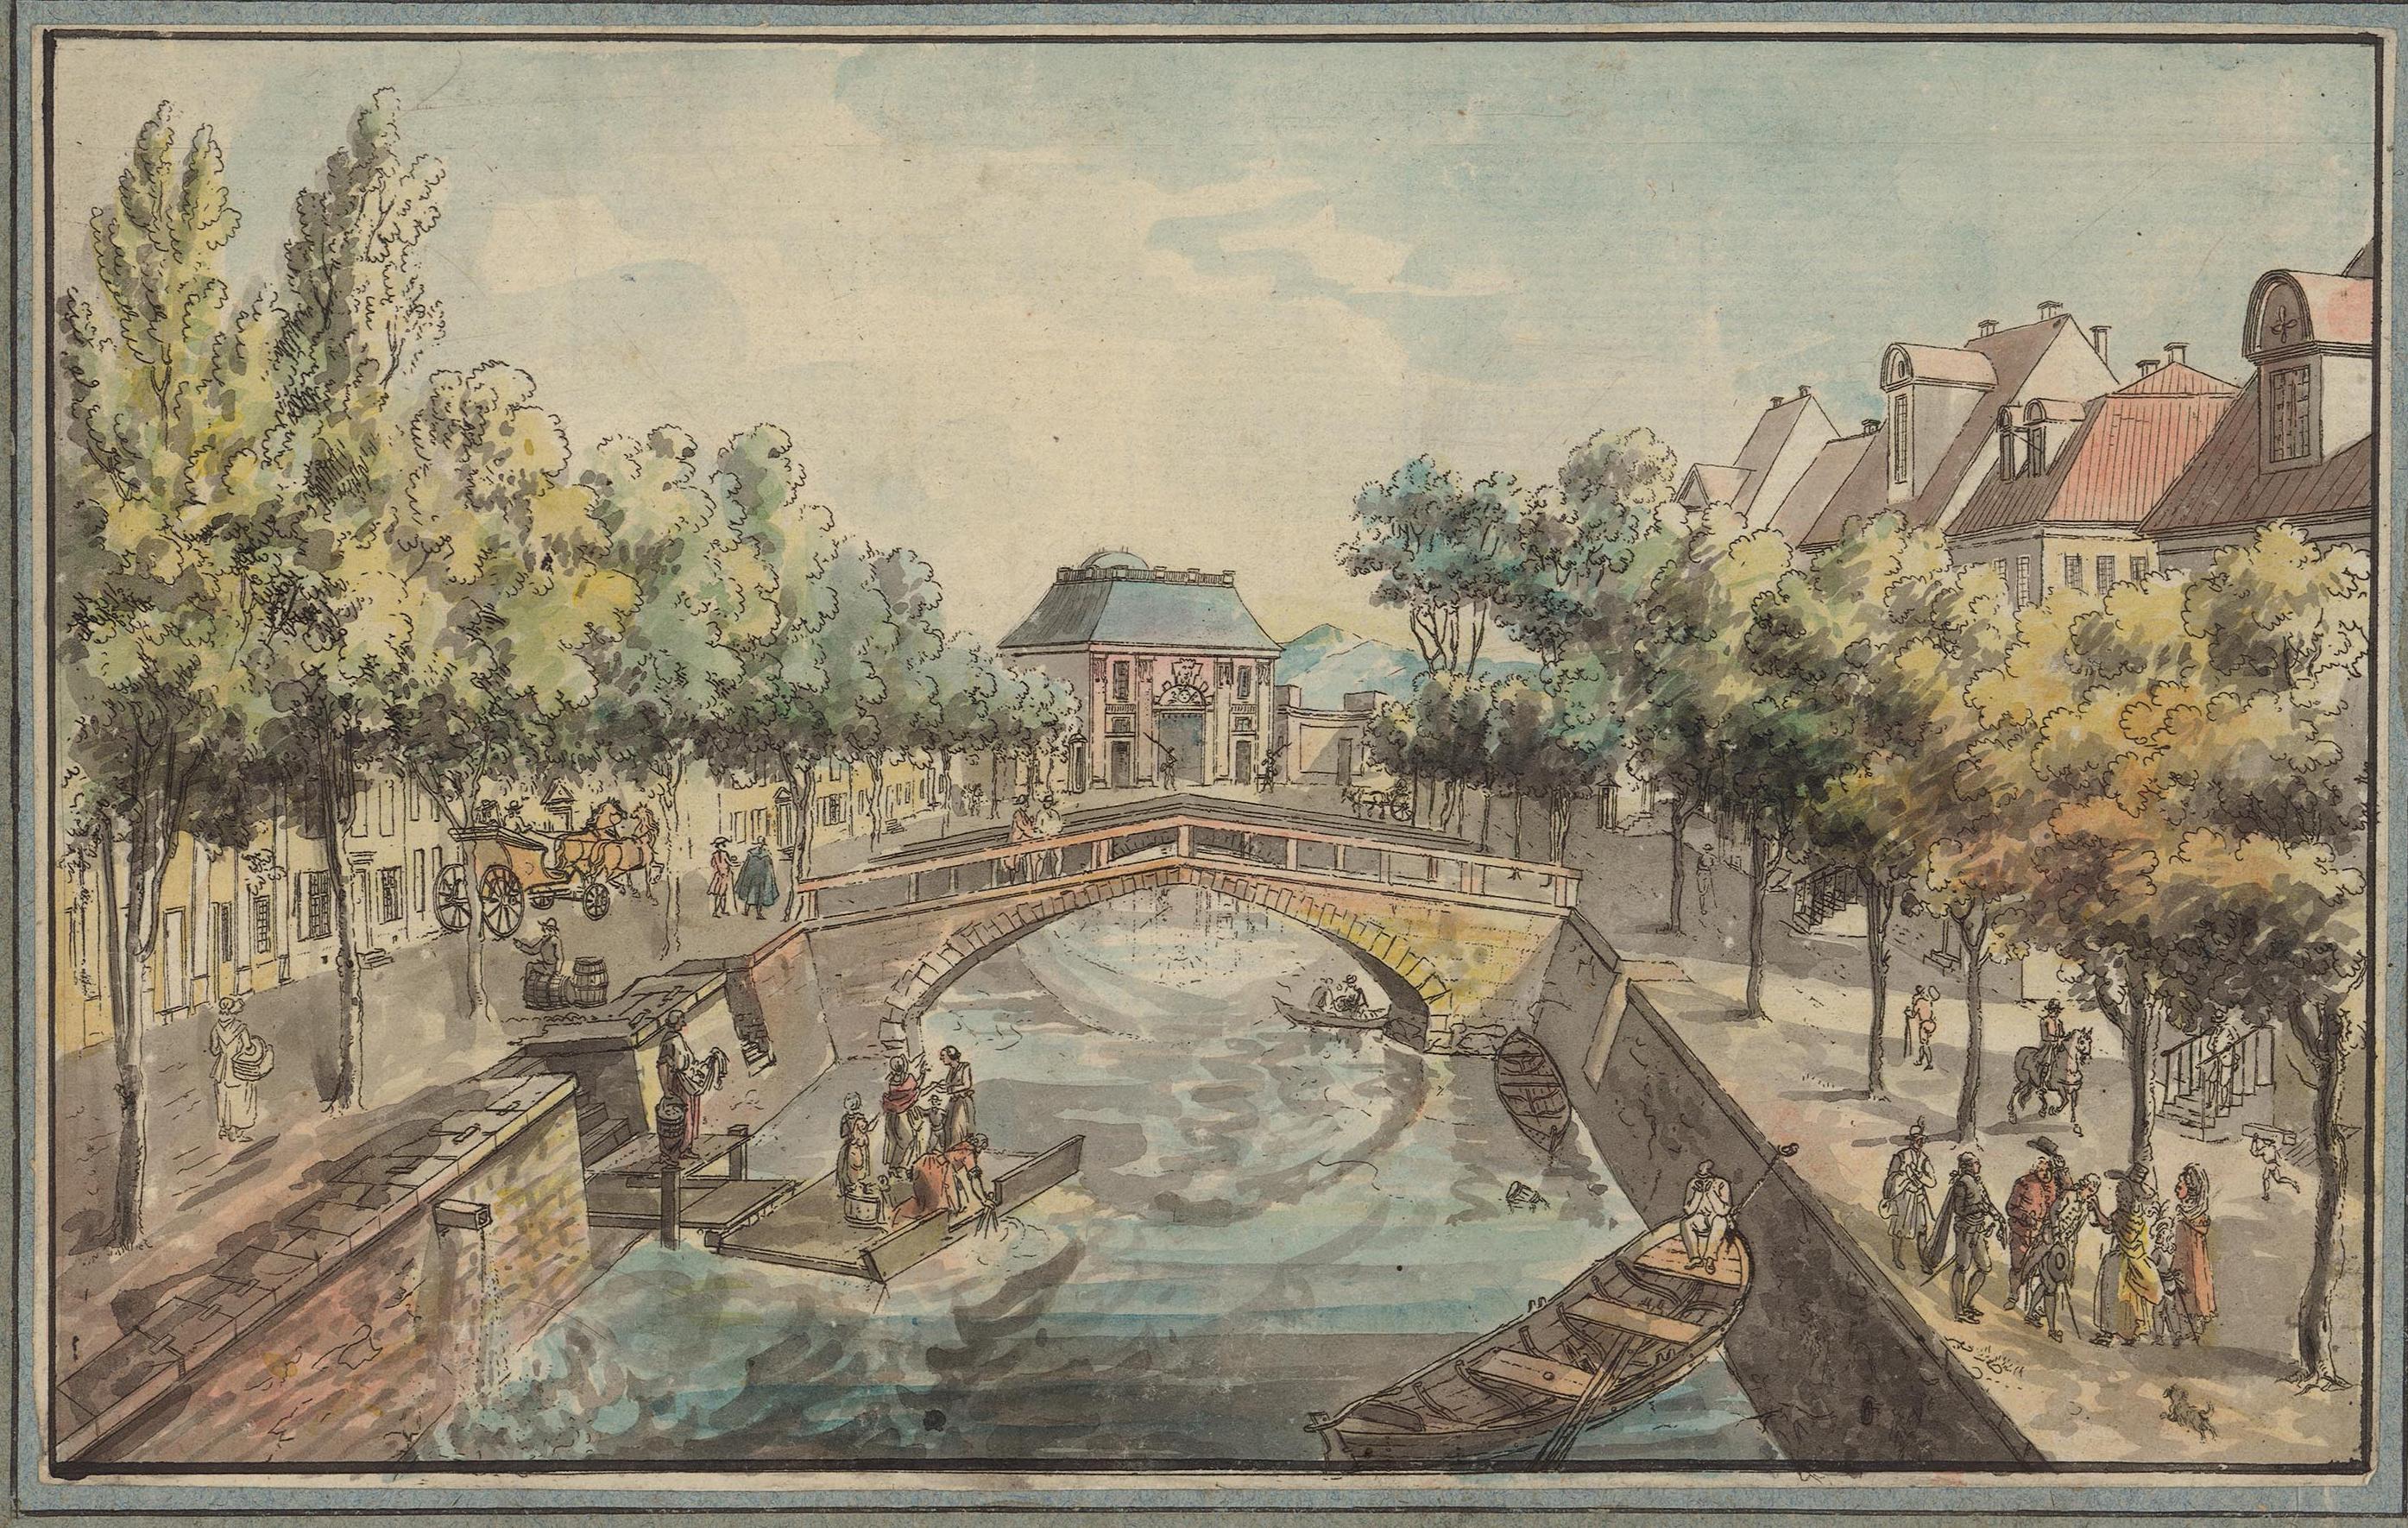 Färglagd vy över en kanal med små båtar, en flotte och en bro, längre bort syns en stor stadsport.